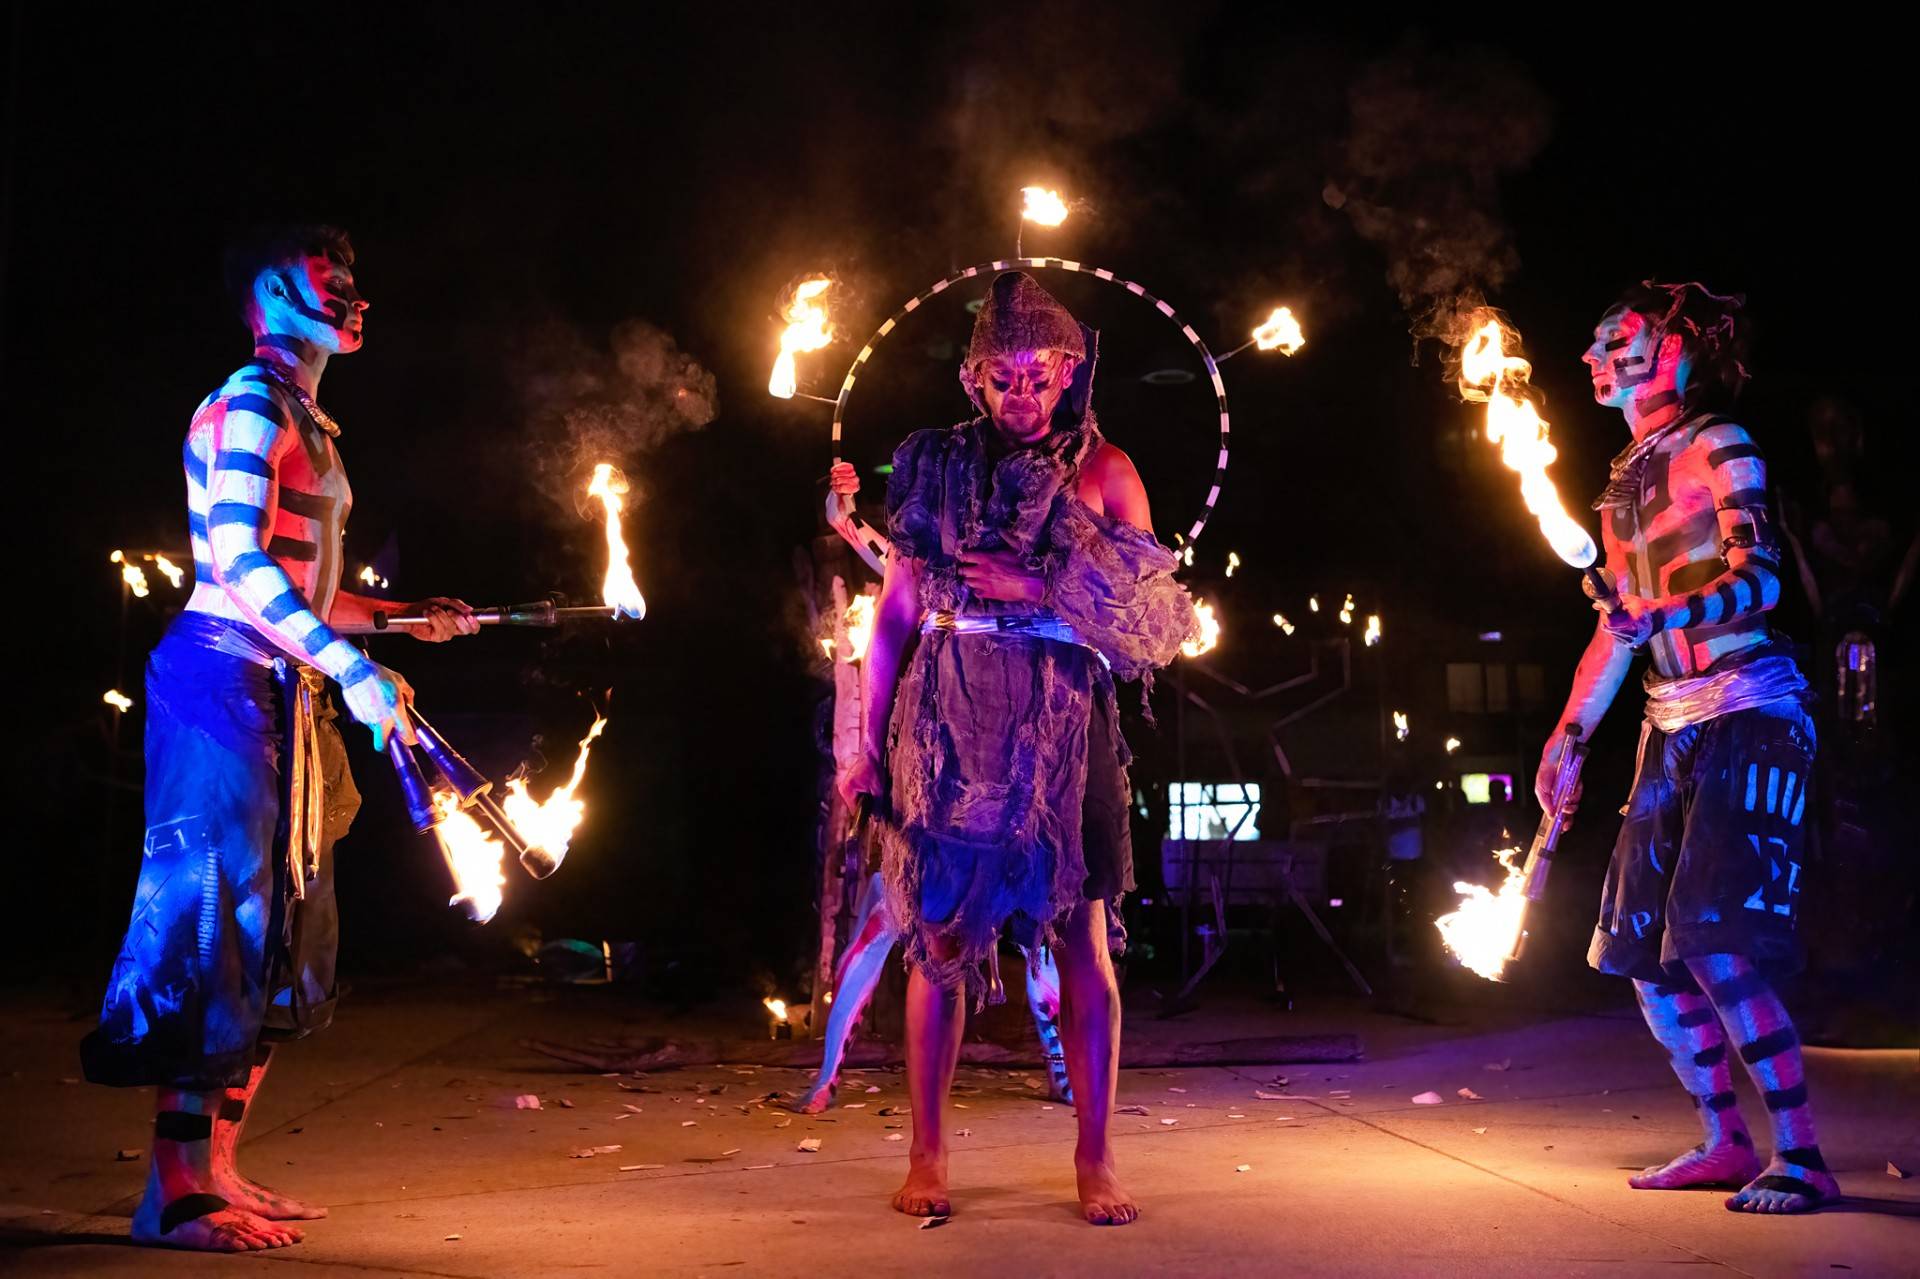 Spektakularny festiwal: od beztroskich klaunad po zapierające dech wieczorne fire show